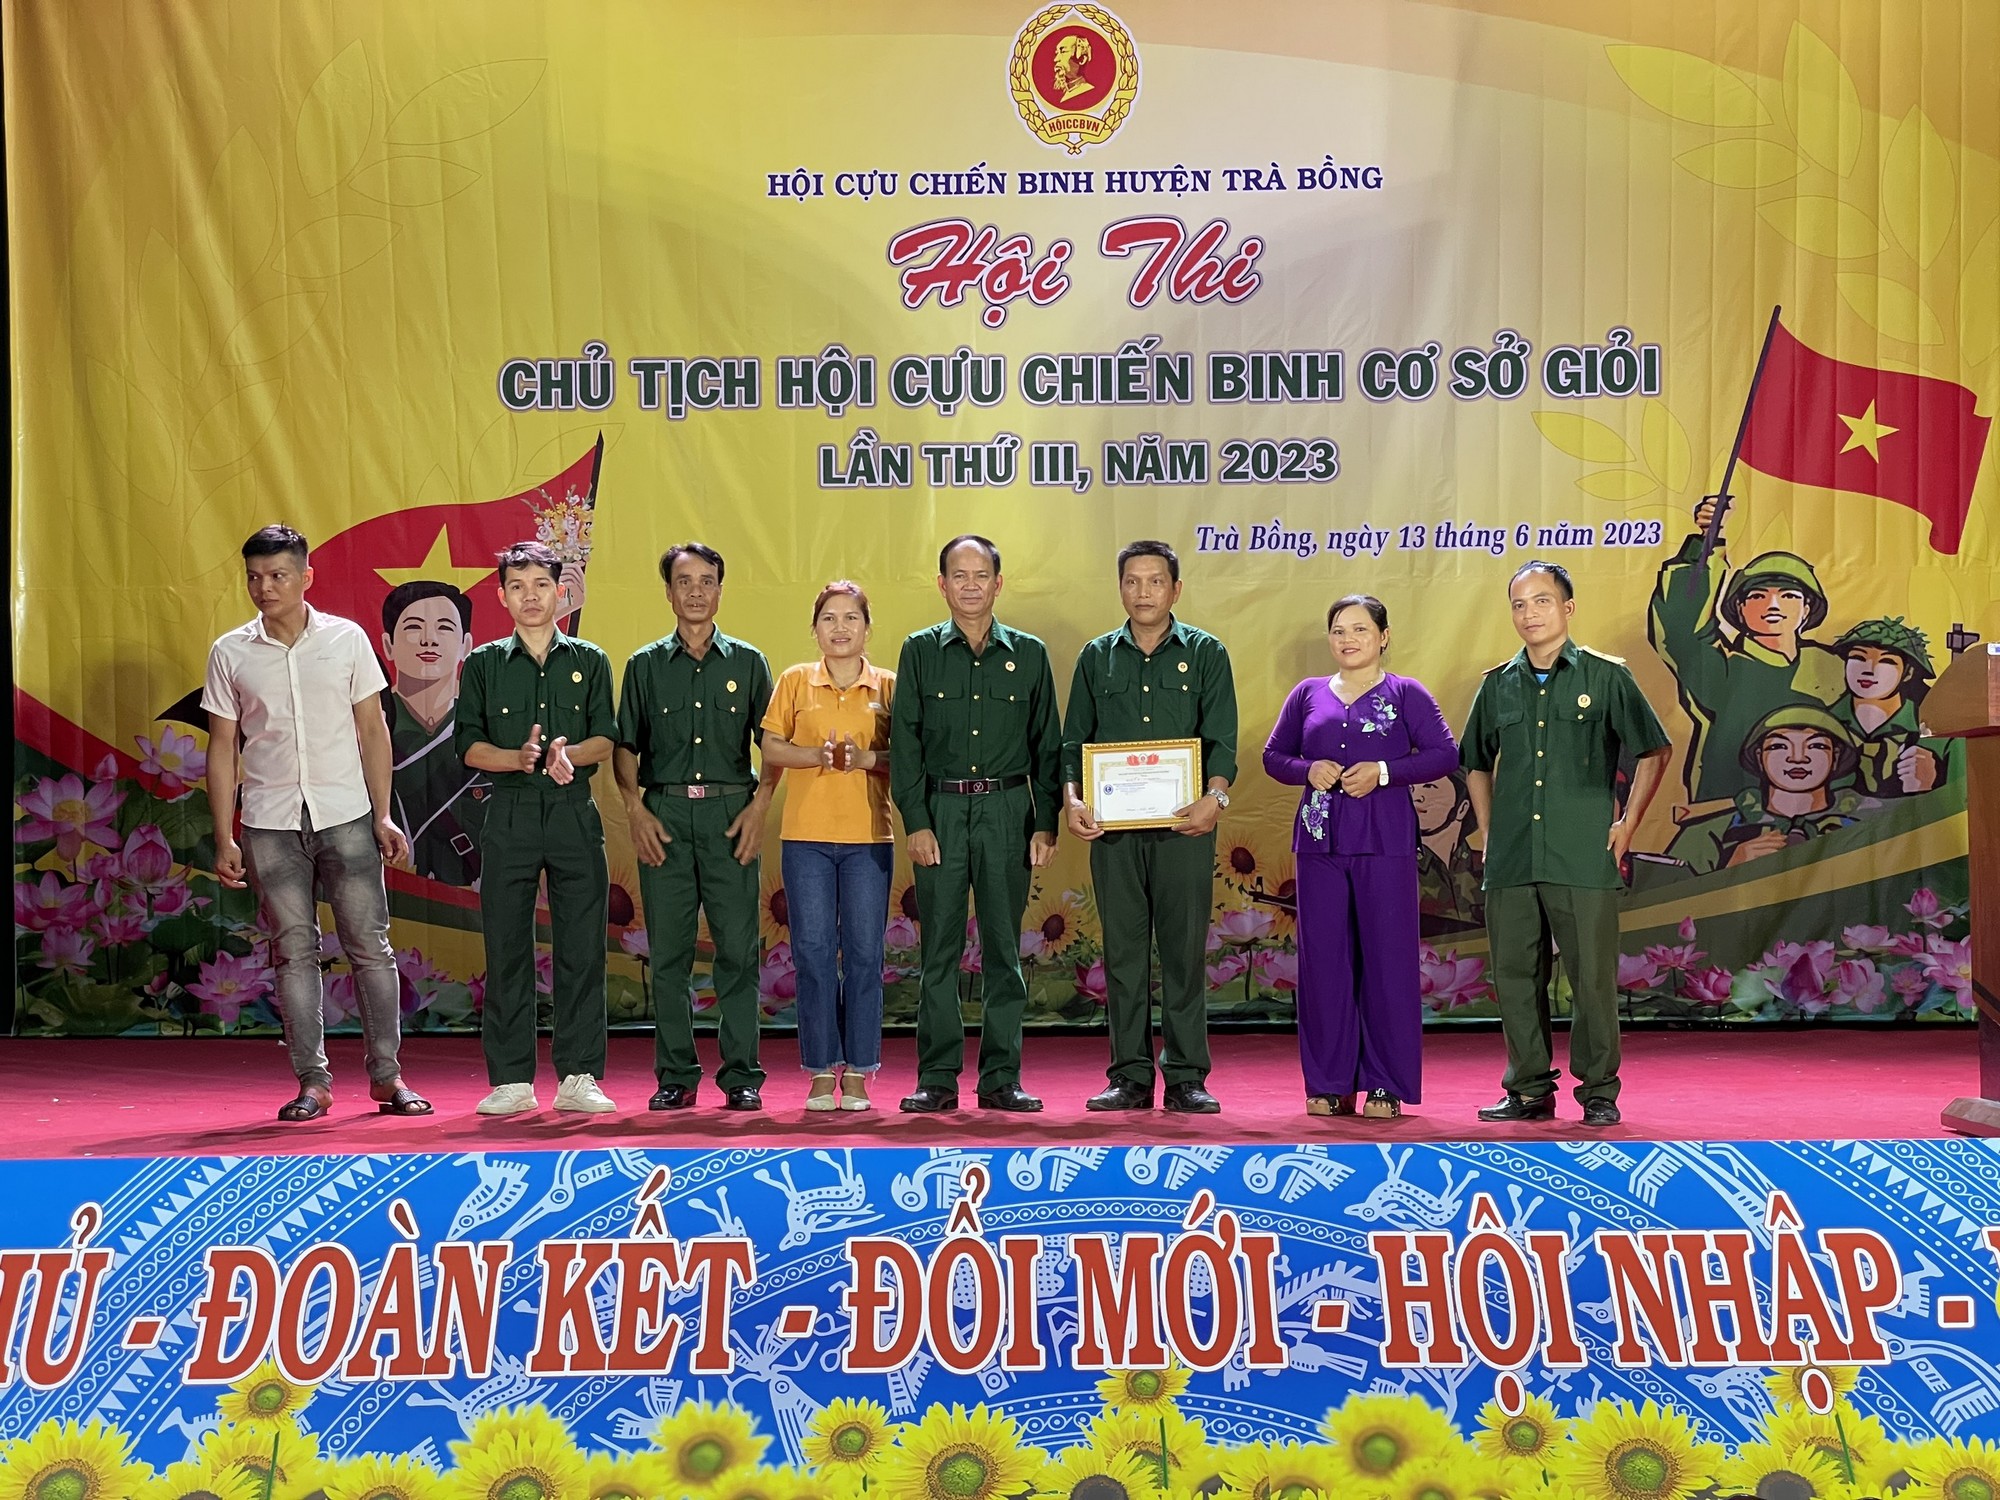 Trà Bồng tổ chức thành công hội thi Chủ tịch Hội Cựu chiến binh cơ sở giỏi lần thứ III, năm 2023